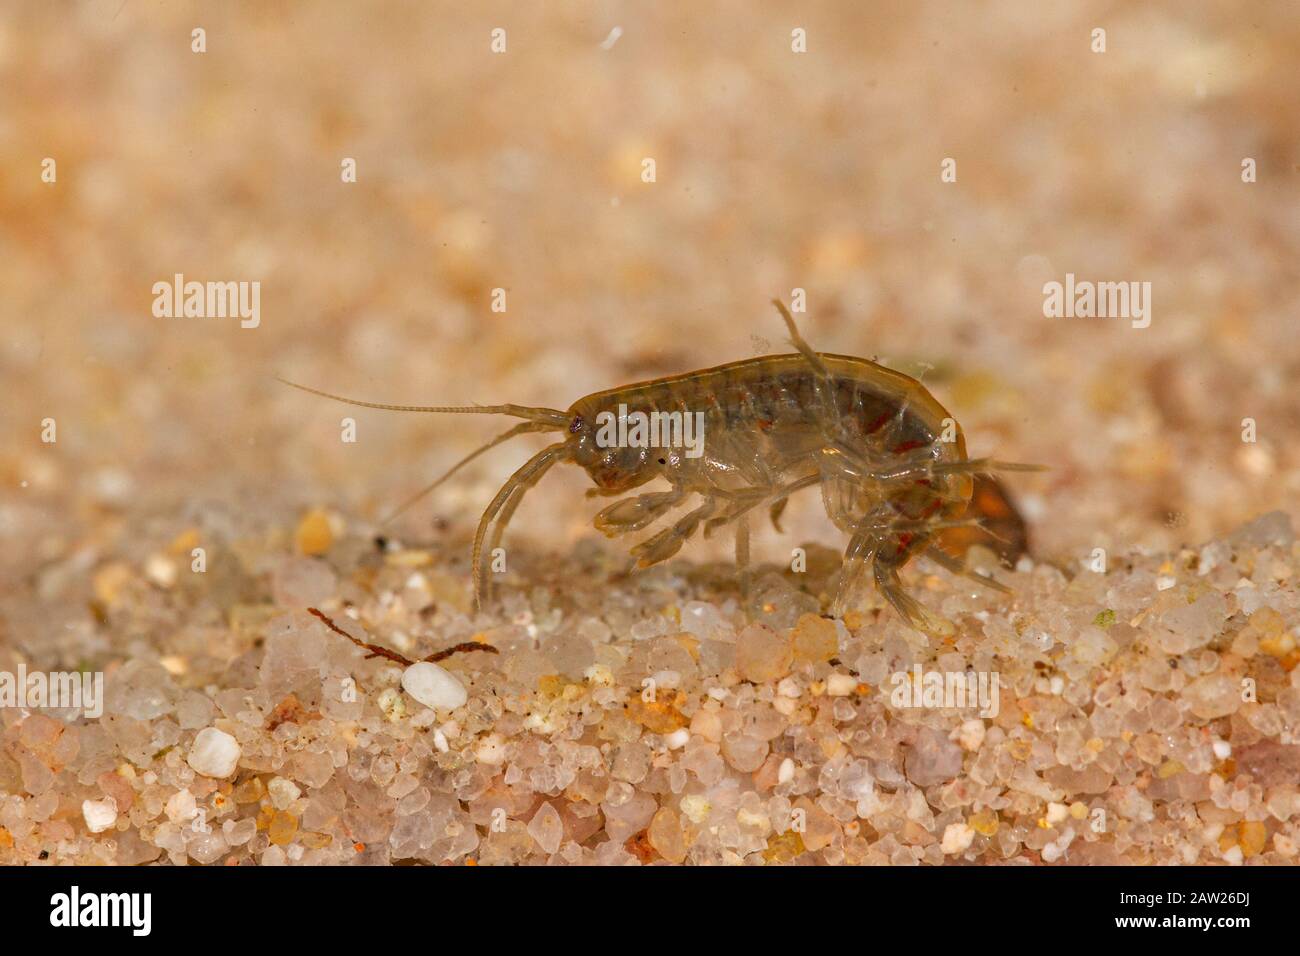 freshwater shrimp (Rivulogammarus pulex, Gammarus pulex), on sandy ground Stock Photo